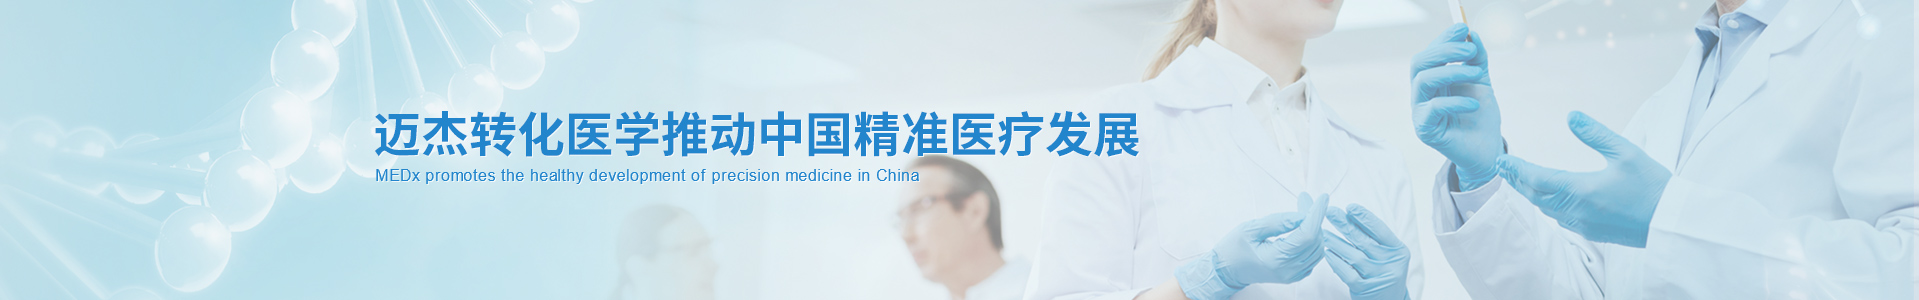 迈杰转化医学推动中国精准医疗健康发展